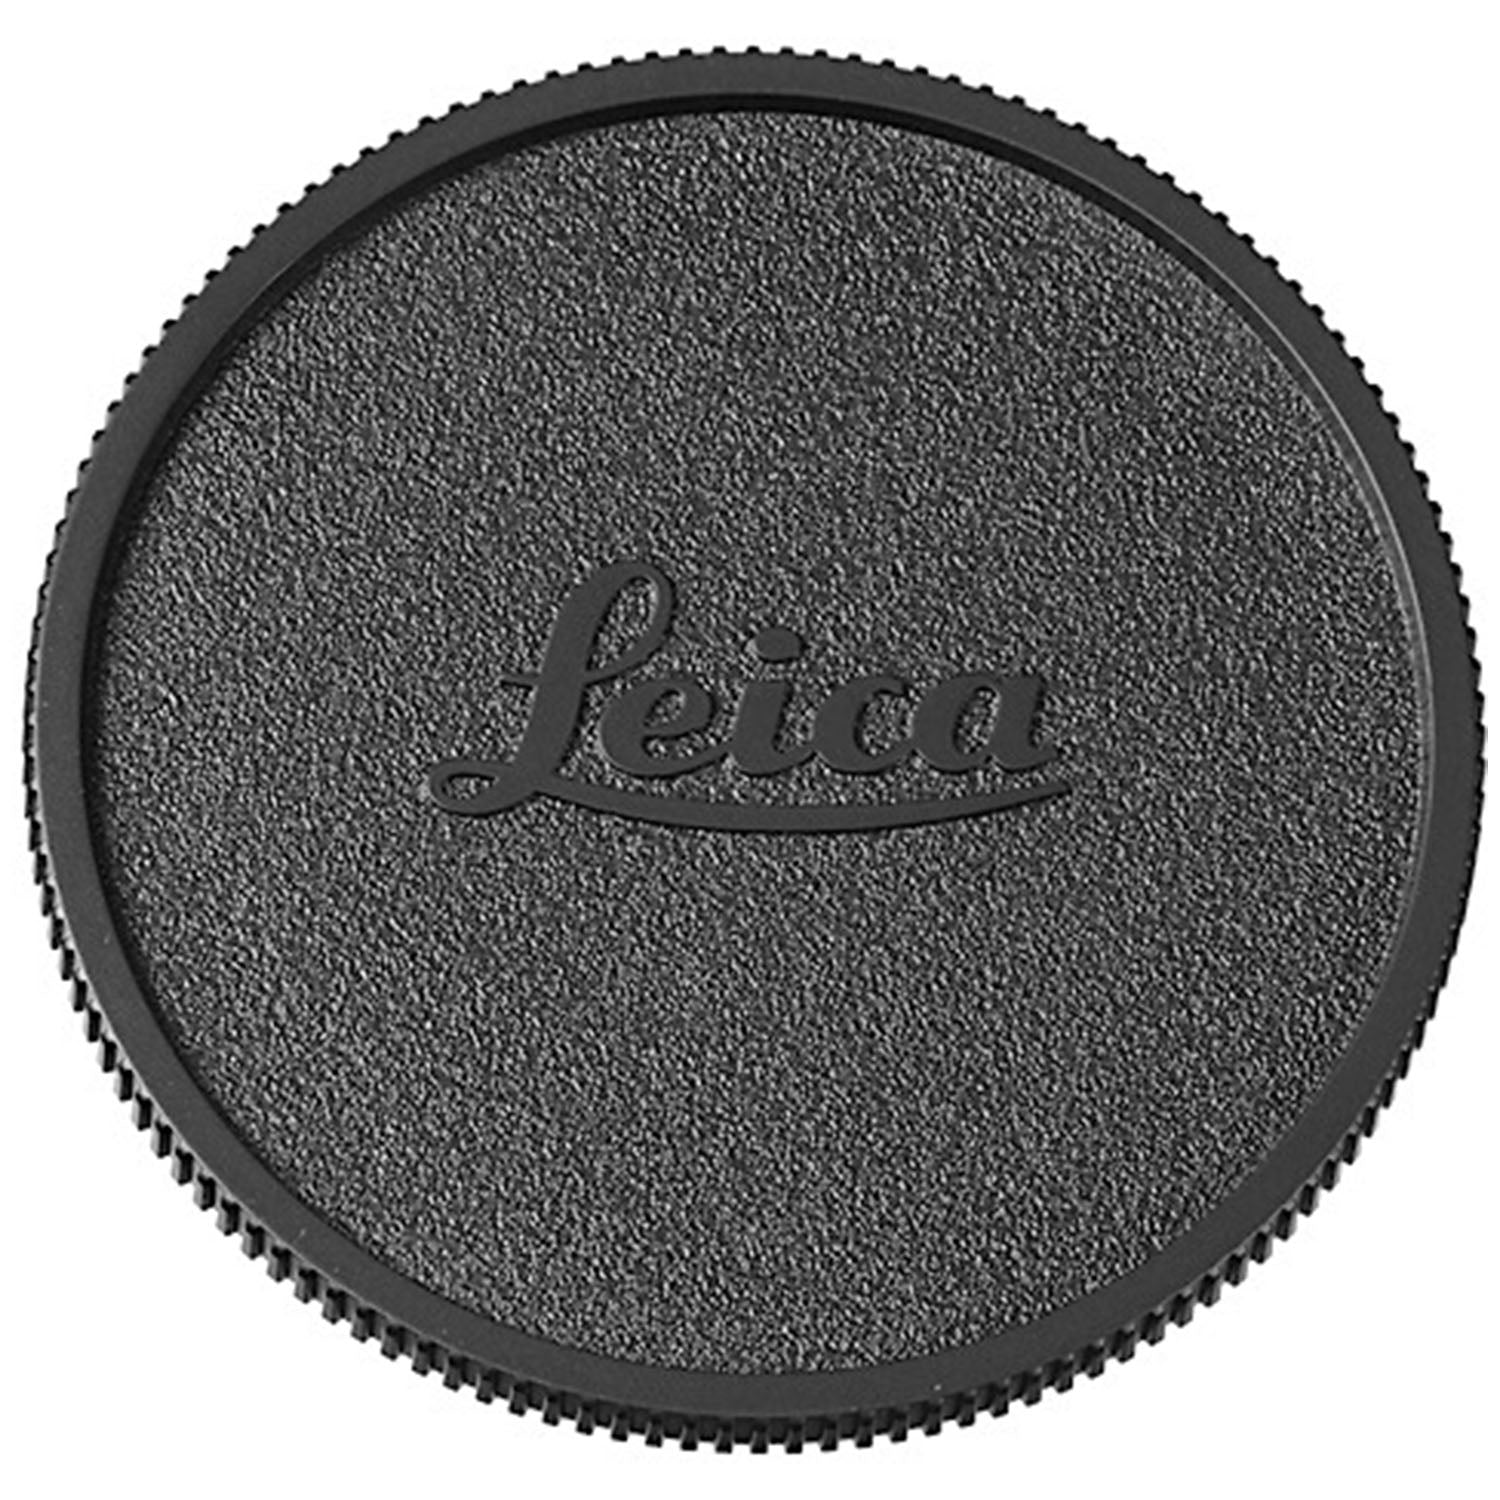 Leica Camera Cover SL